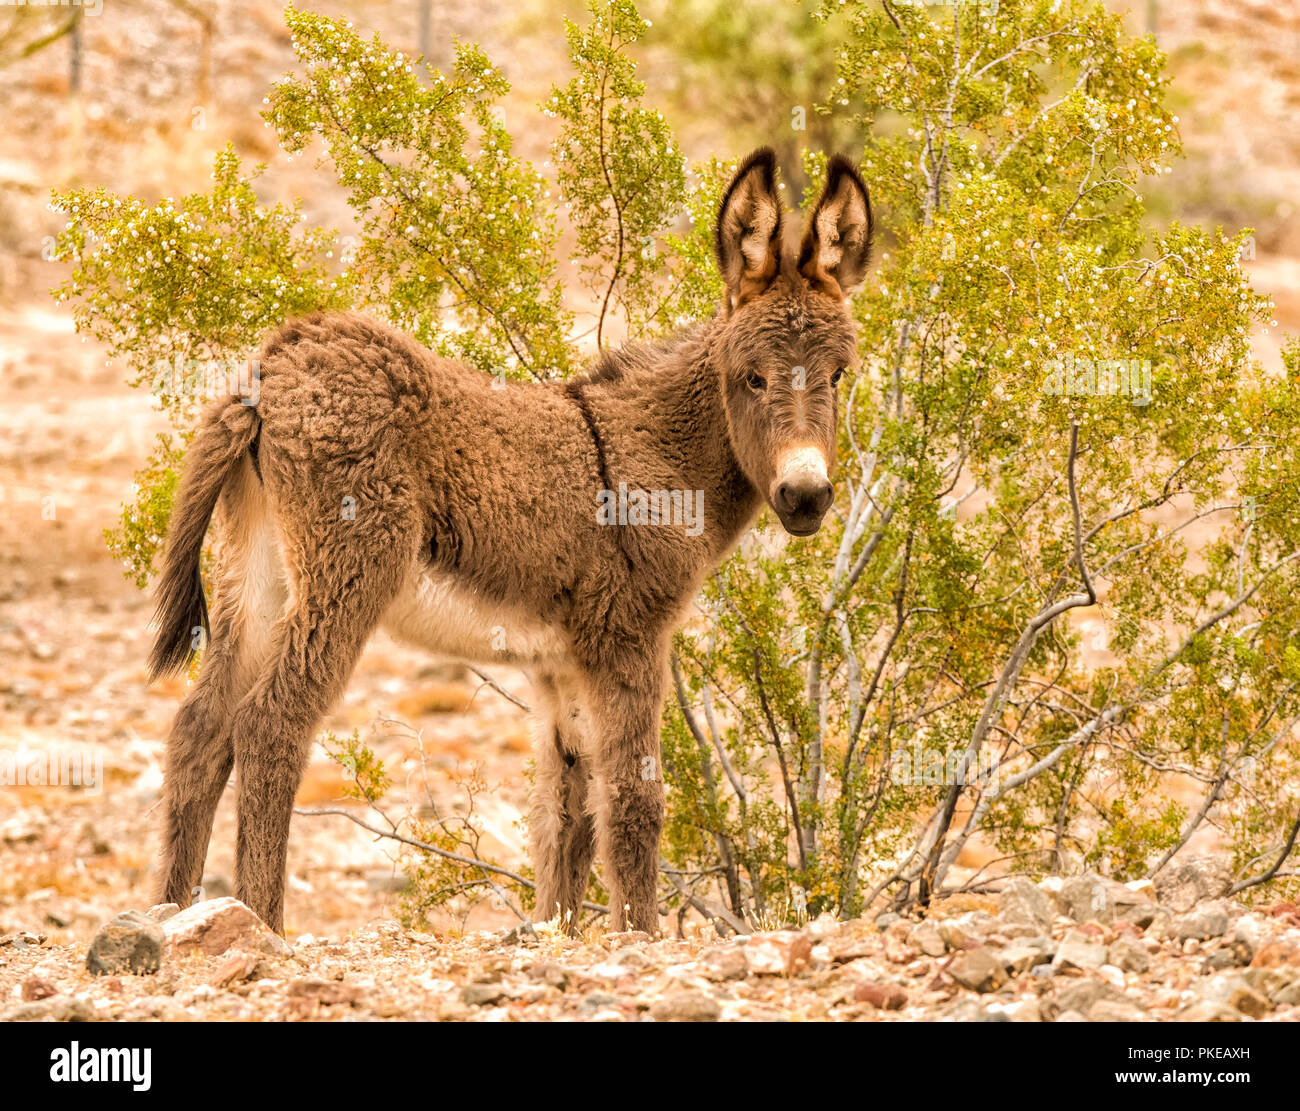 Wild young burro, Lake Havasu; Arizona, United States of America Stock Photo